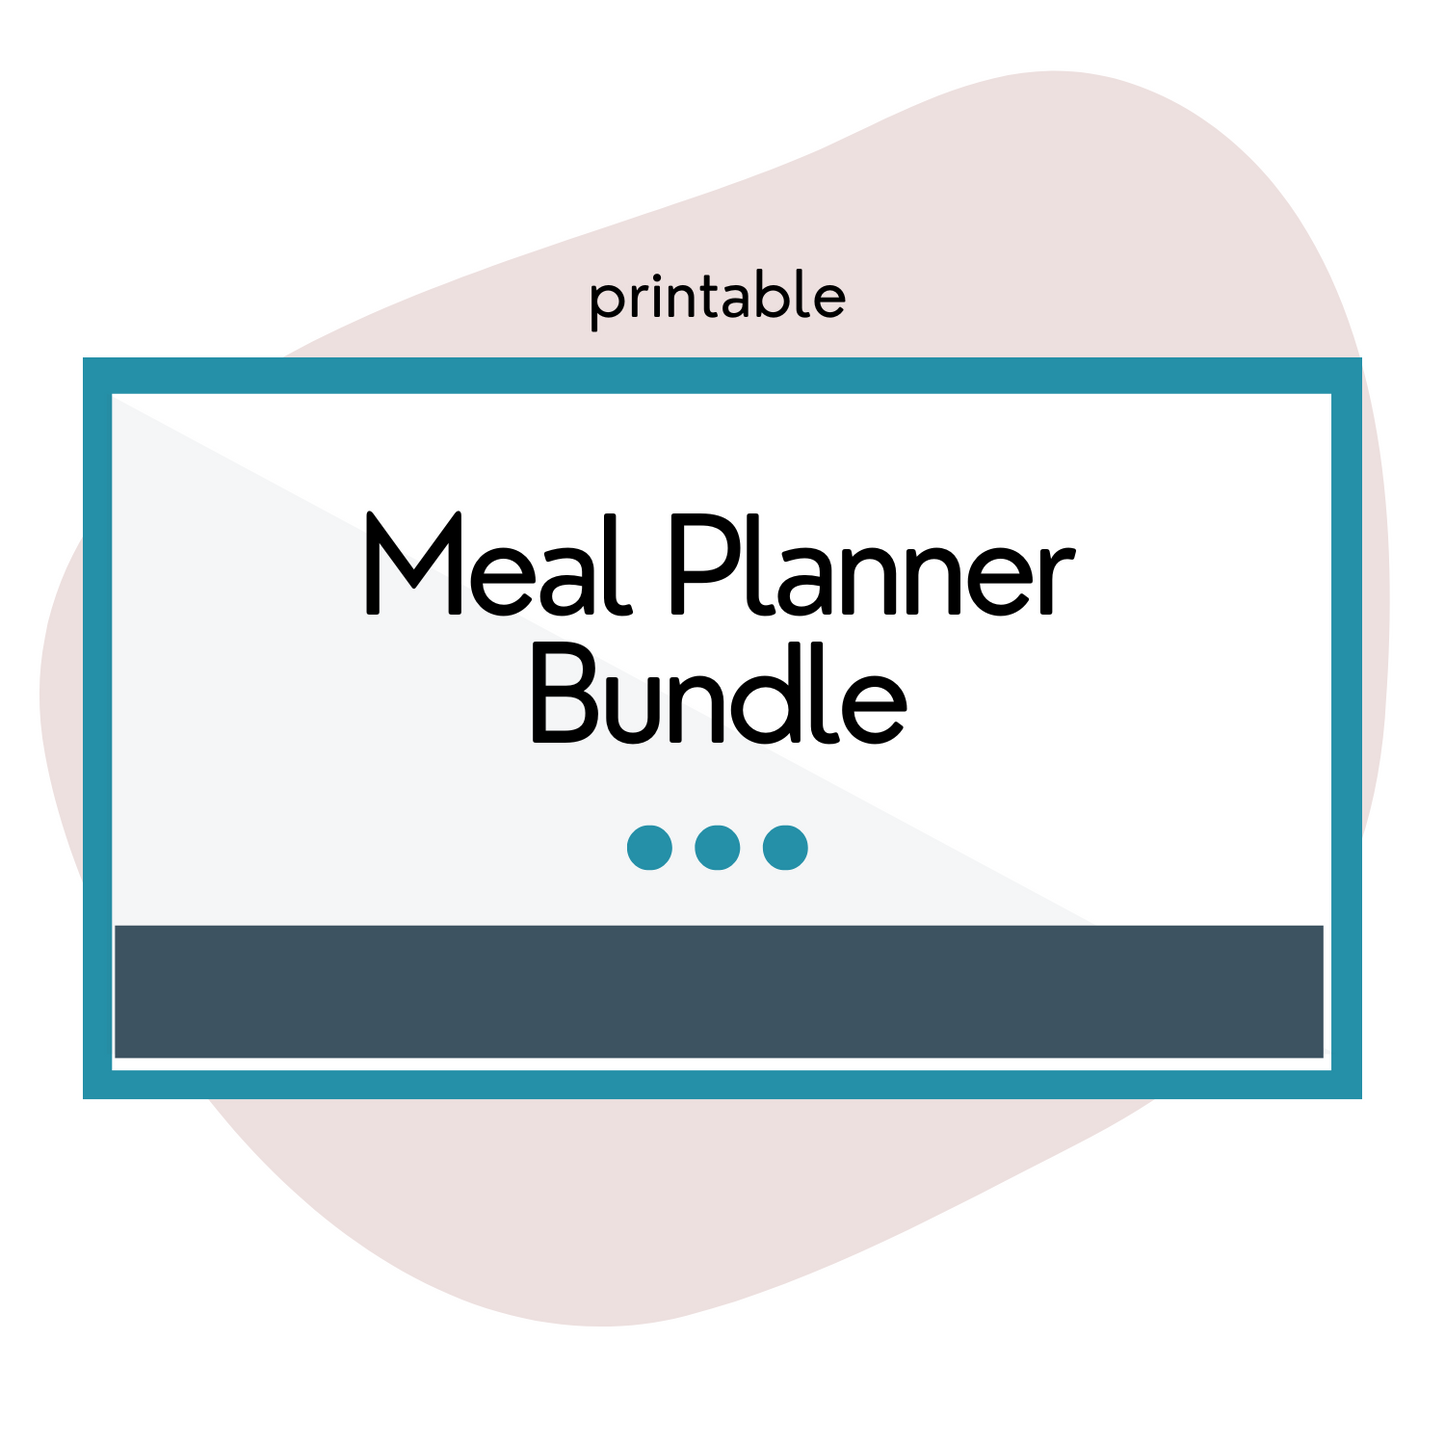 Meal Planner Bundle